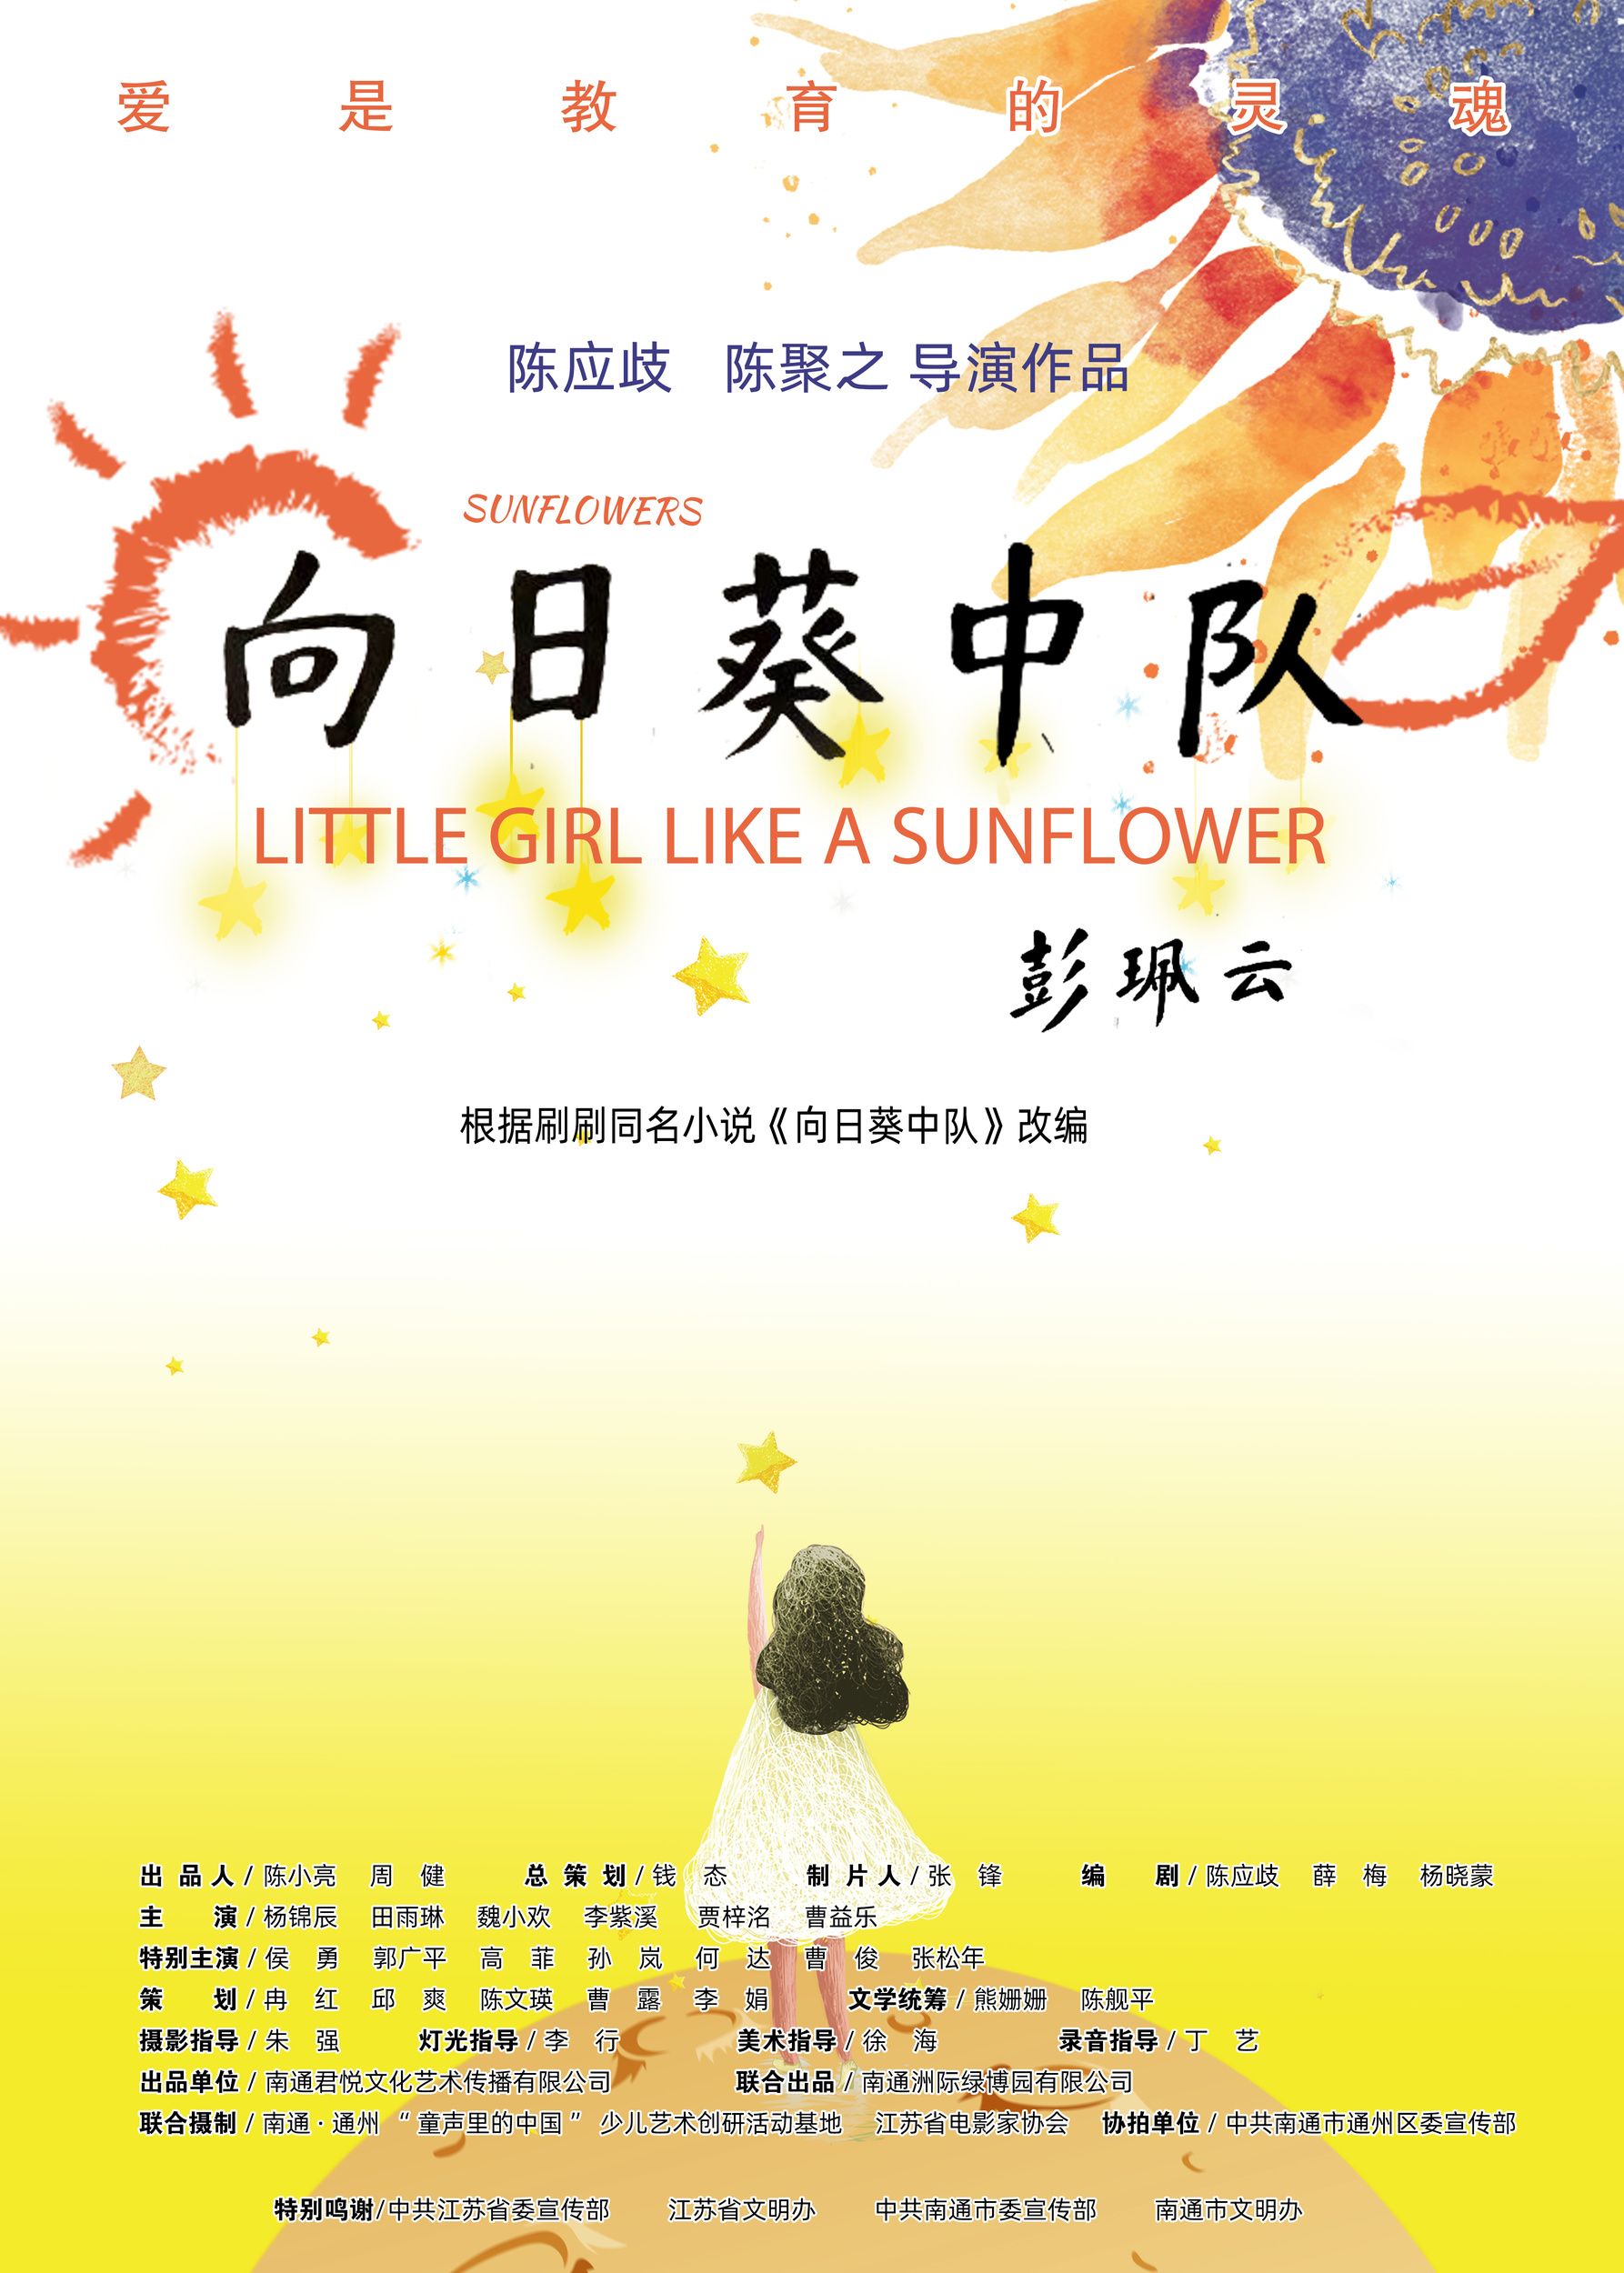 向日葵中队 - Little girl like a sunflower